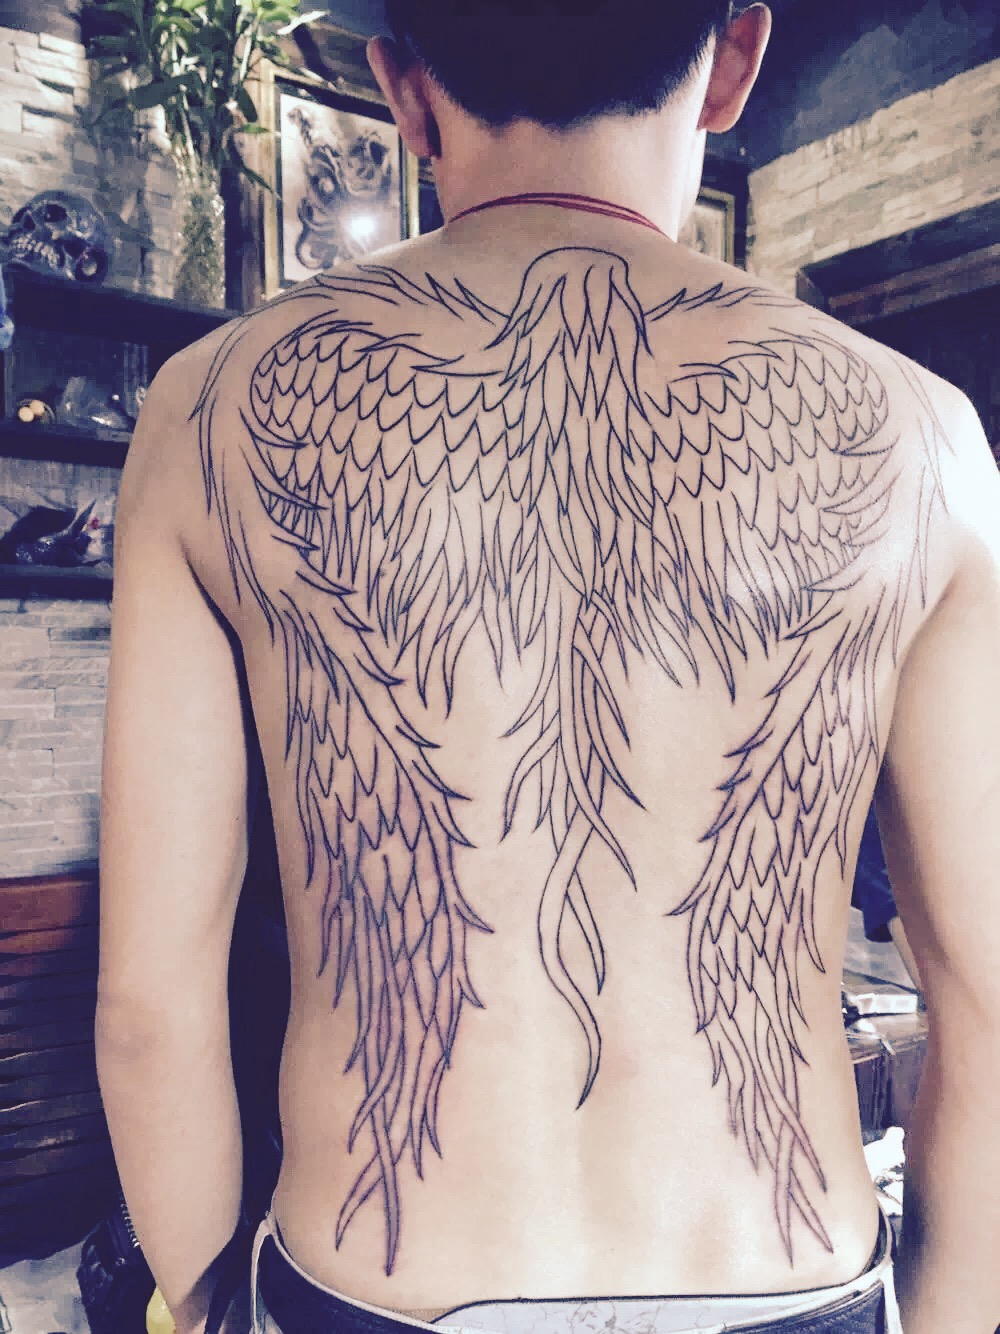 成都贾先生背部的天使翅膀纹身图案